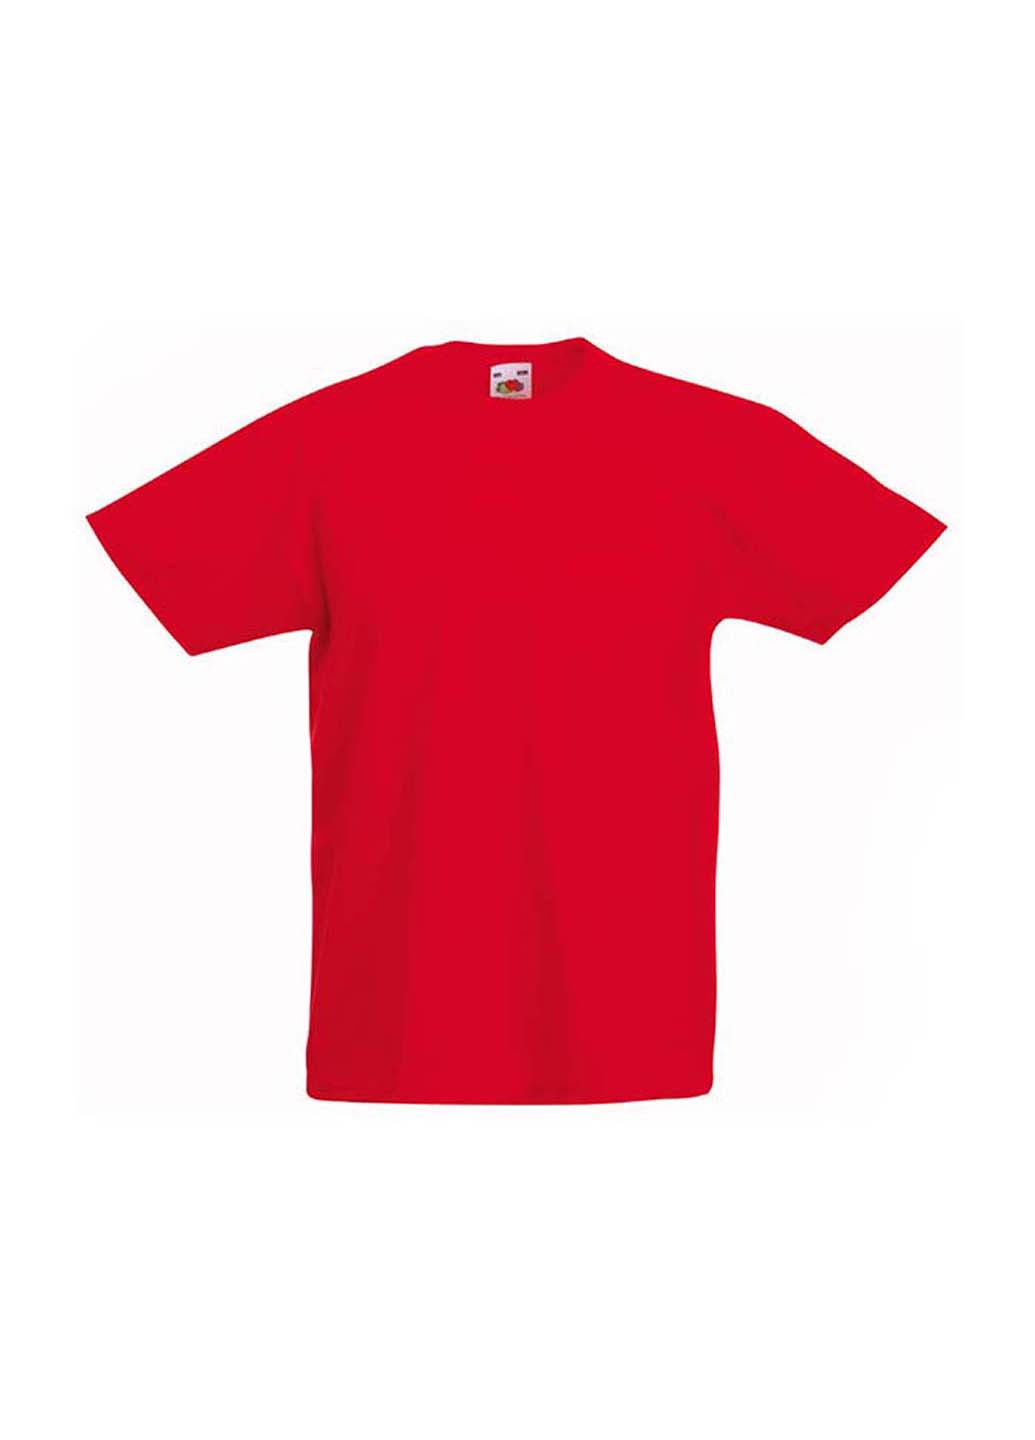 Красная демисезонная футболка Fruit of the Loom 61019040164